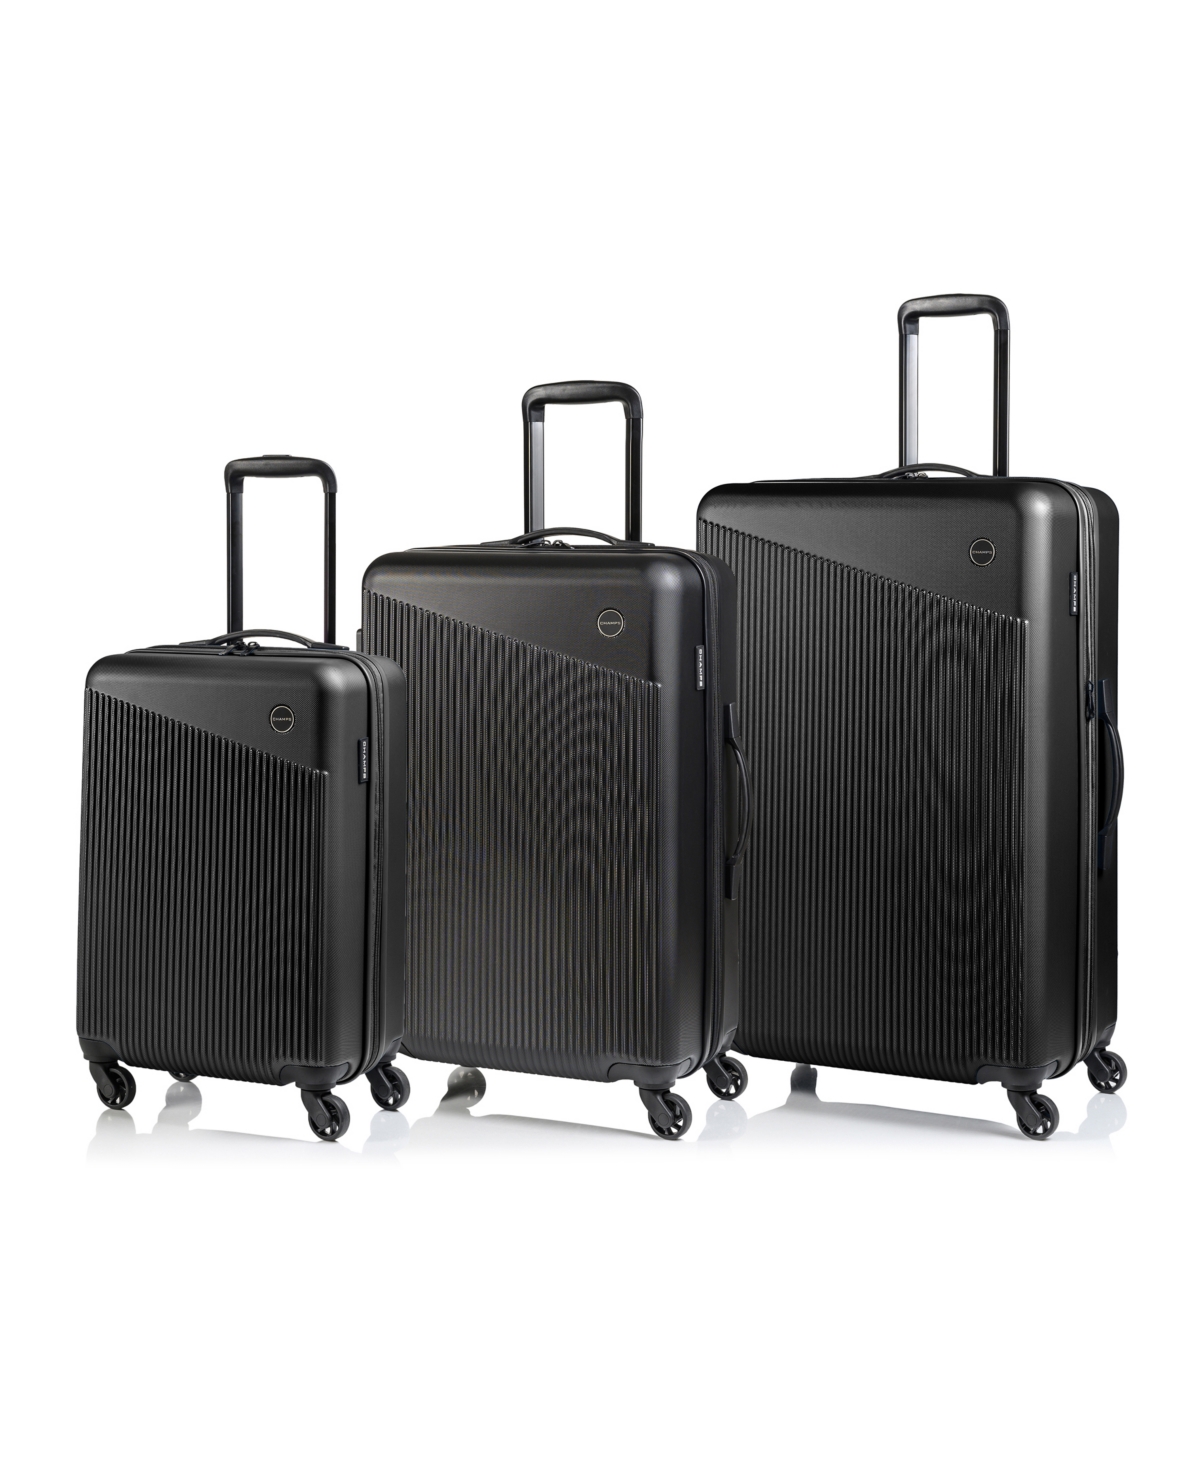 3 Piece Astro Hardside Luggage Set - Black